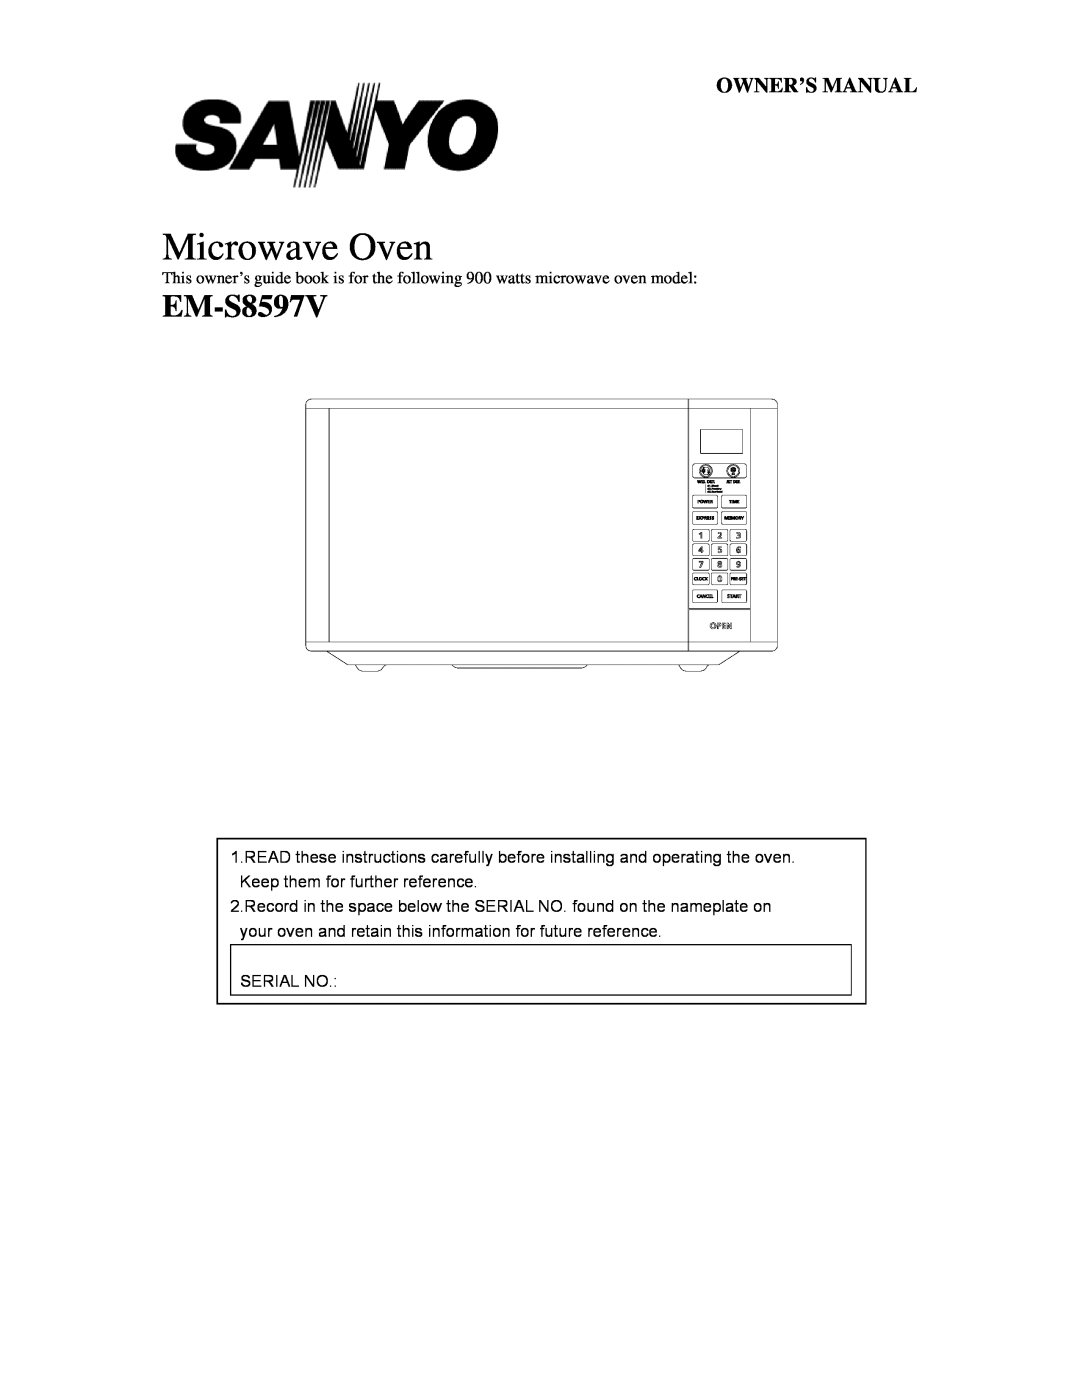 Sanyo EM-S8597V owner manual Microwave Oven 